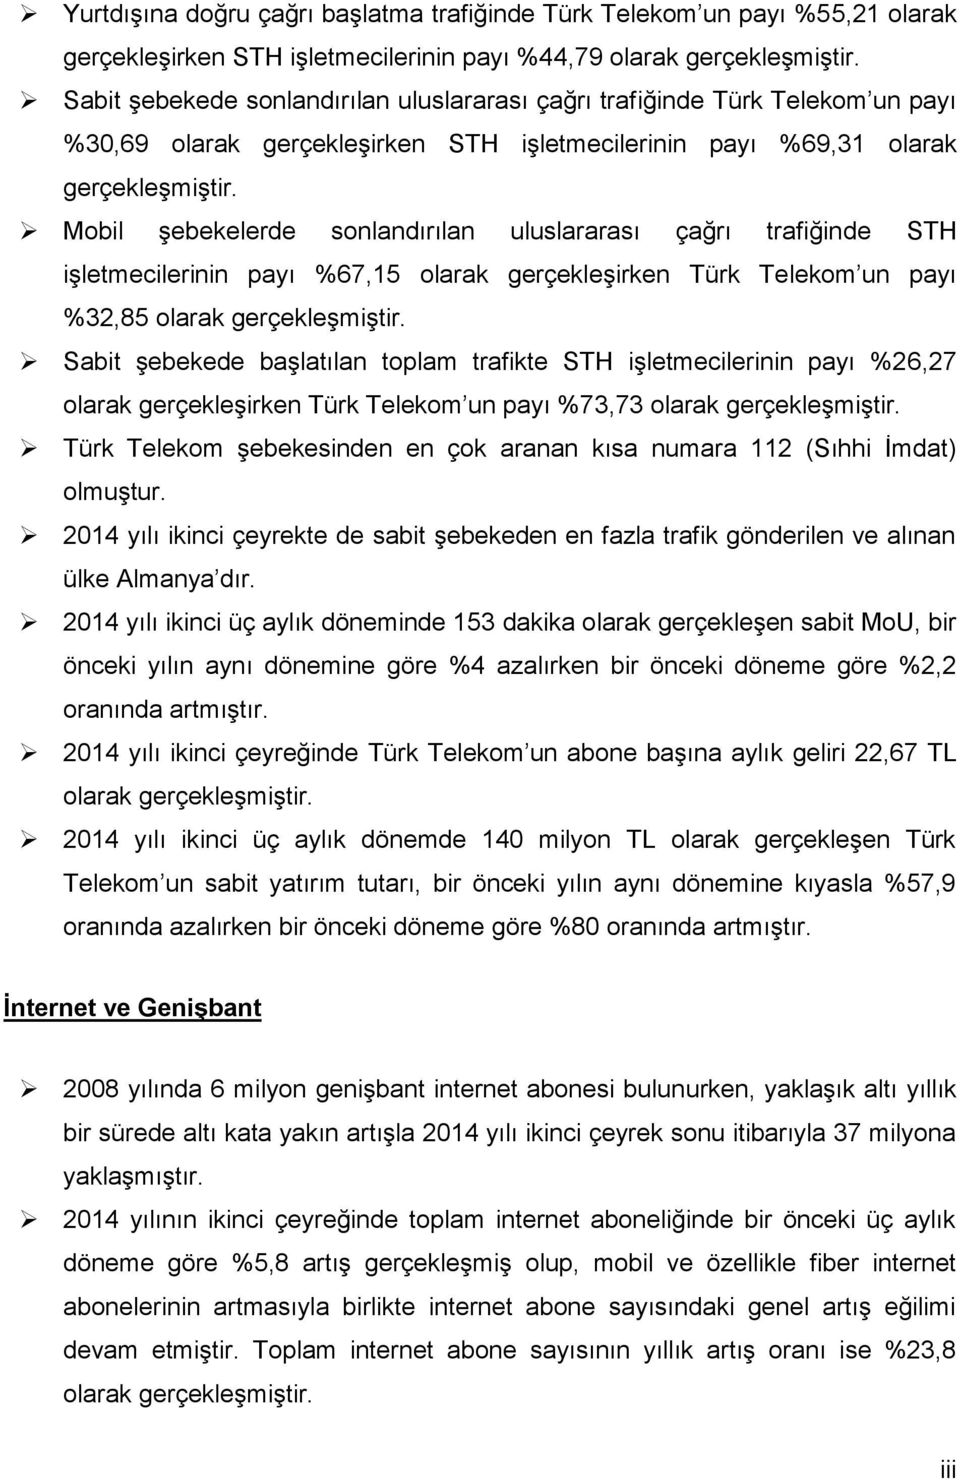 Mobil şebekelerde sonlandırılan uluslararası çağrı trafiğinde STH işletmecilerinin payı %67,15 olarak gerçekleşirken Türk Telekom un payı %32,85 olarak gerçekleşmiştir.